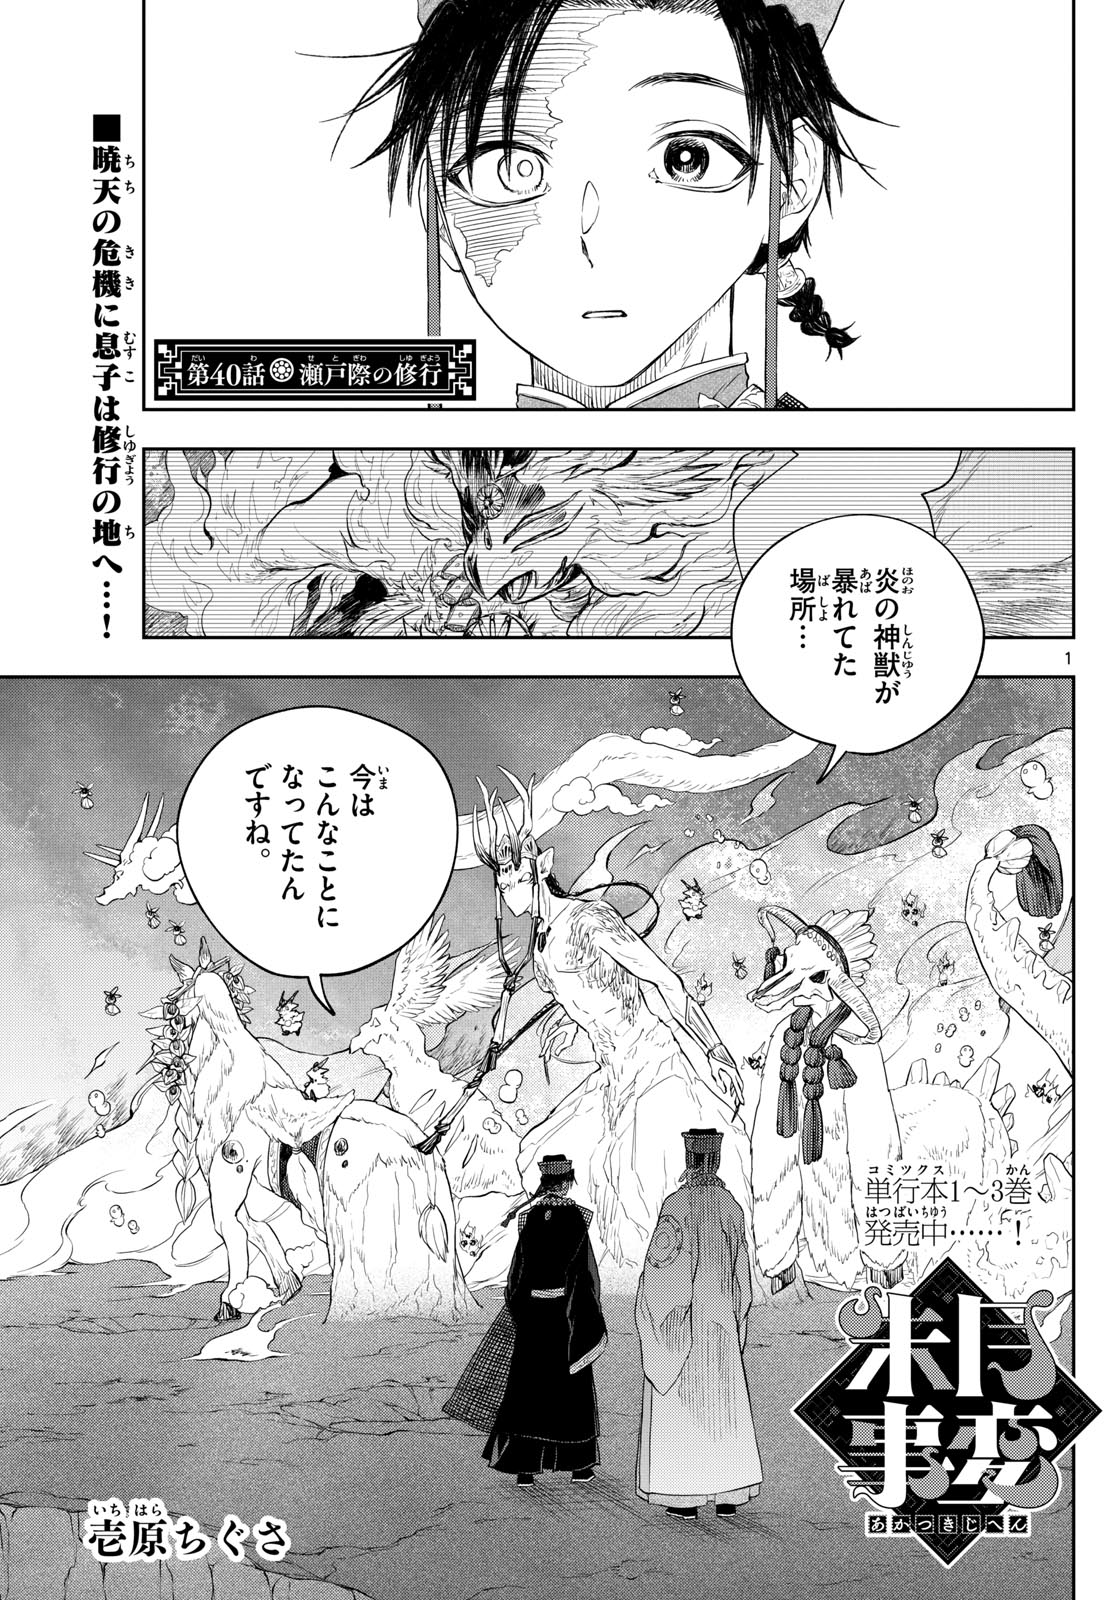 Akatsuki Jihen - Chapter 40 - Page 1